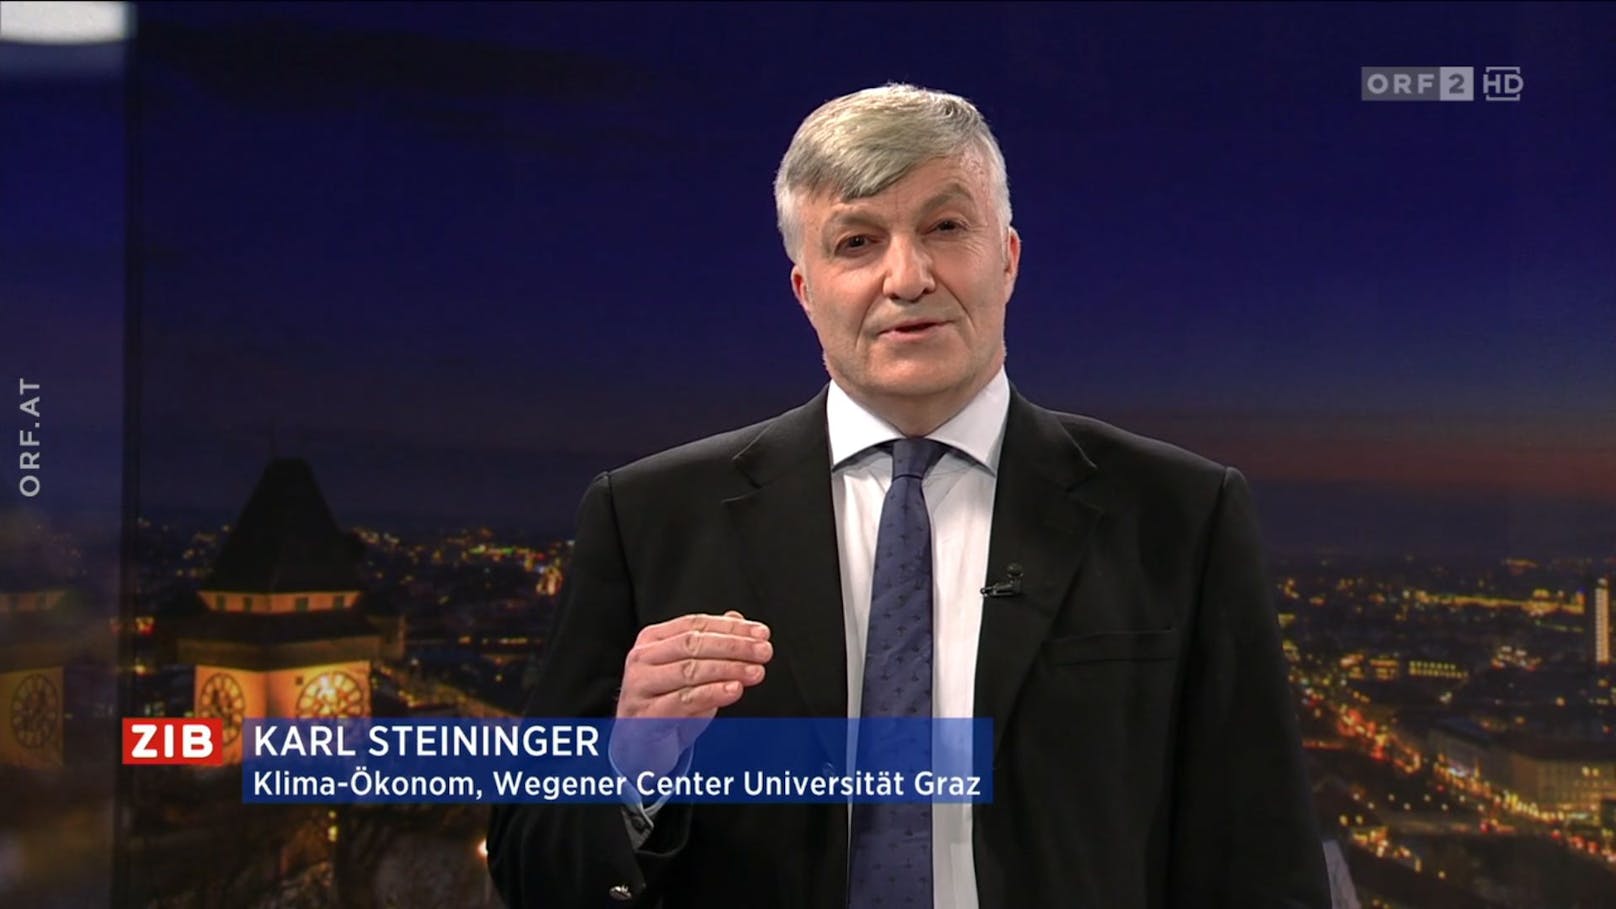 Klimaökonom Karl Steininger in der ZIB2 am 20. November 2022 mit Marie-Claire Zimmermann.